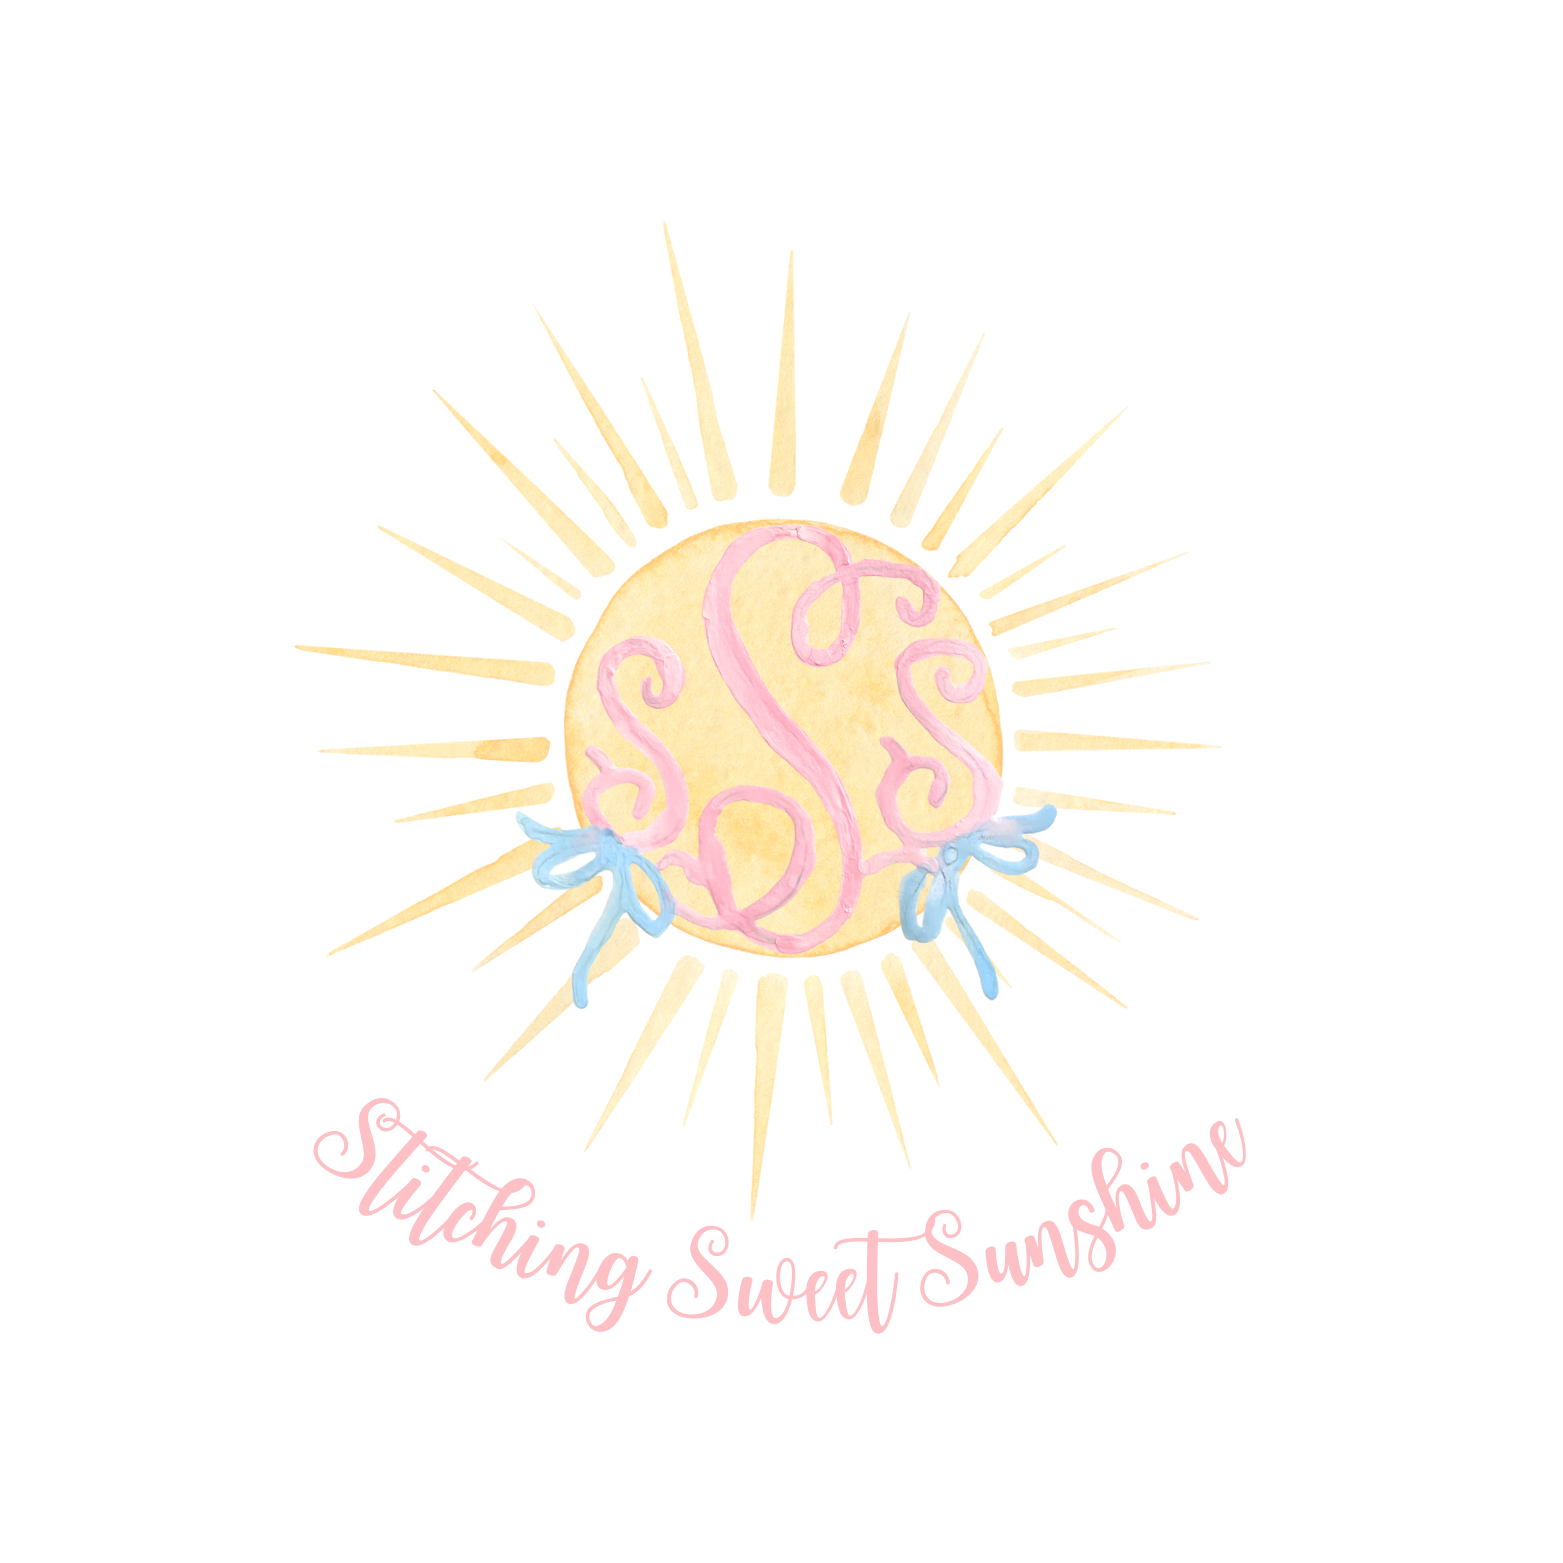 Stitching Sweet Sunshine